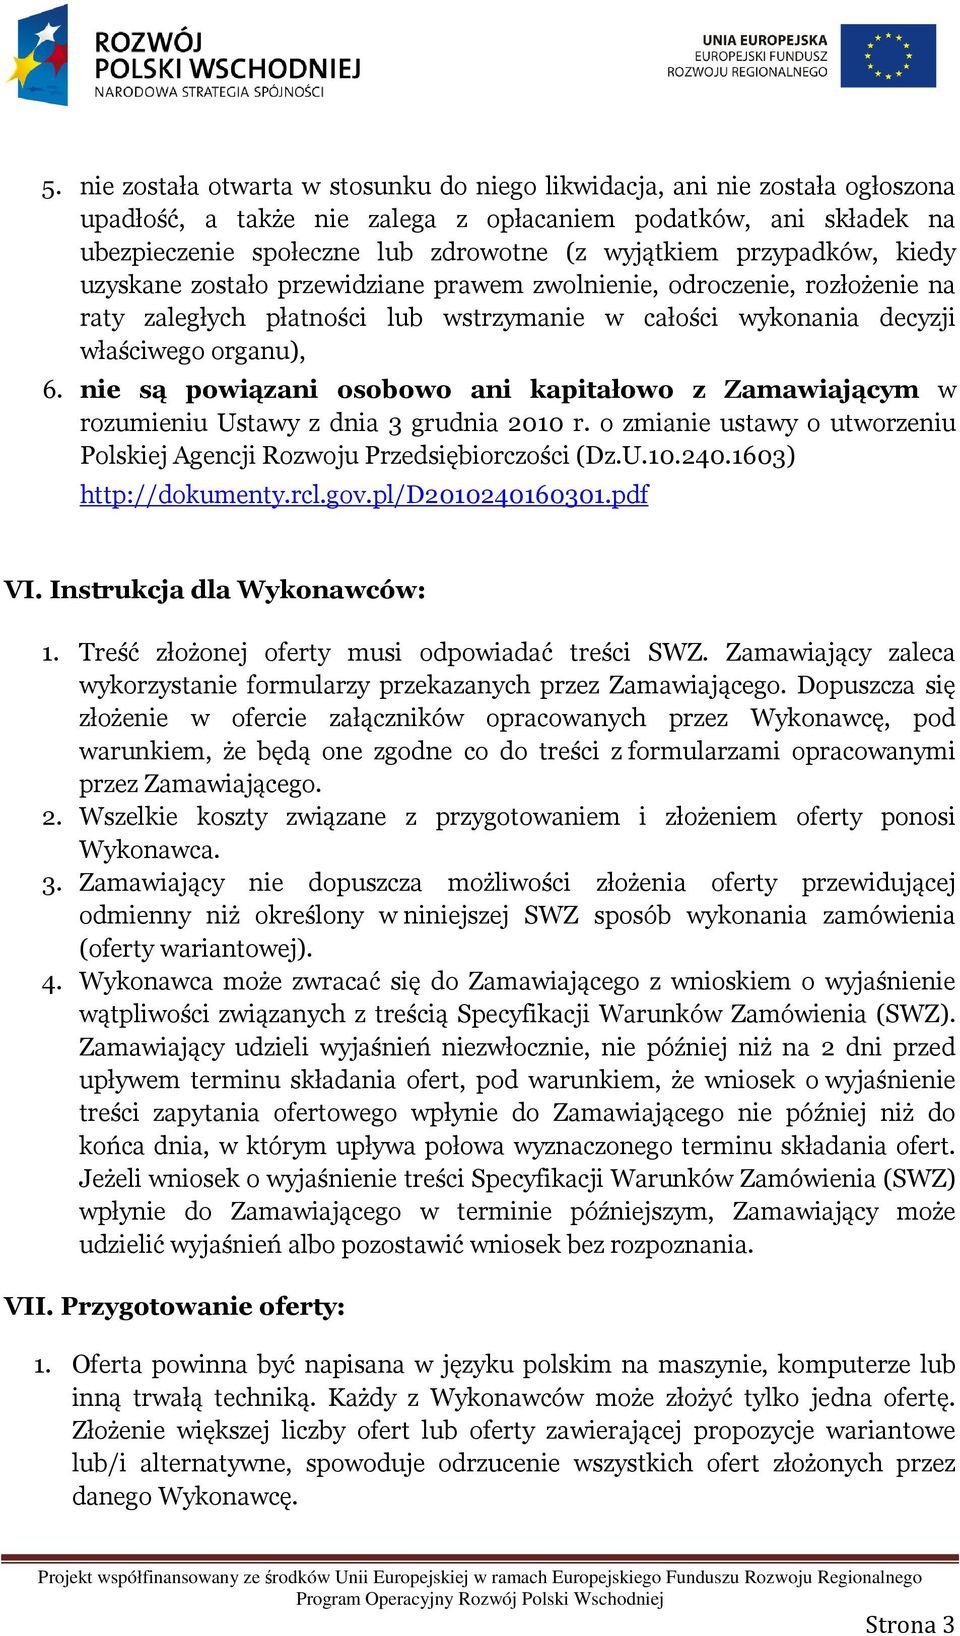 nie są powiązani osobowo ani kapitałowo z Zamawiającym w rozumieniu Ustawy z dnia 3 grudnia 2010 r. o zmianie ustawy o utworzeniu Polskiej Agencji Rozwoju Przedsiębiorczości (Dz.U.10.240.